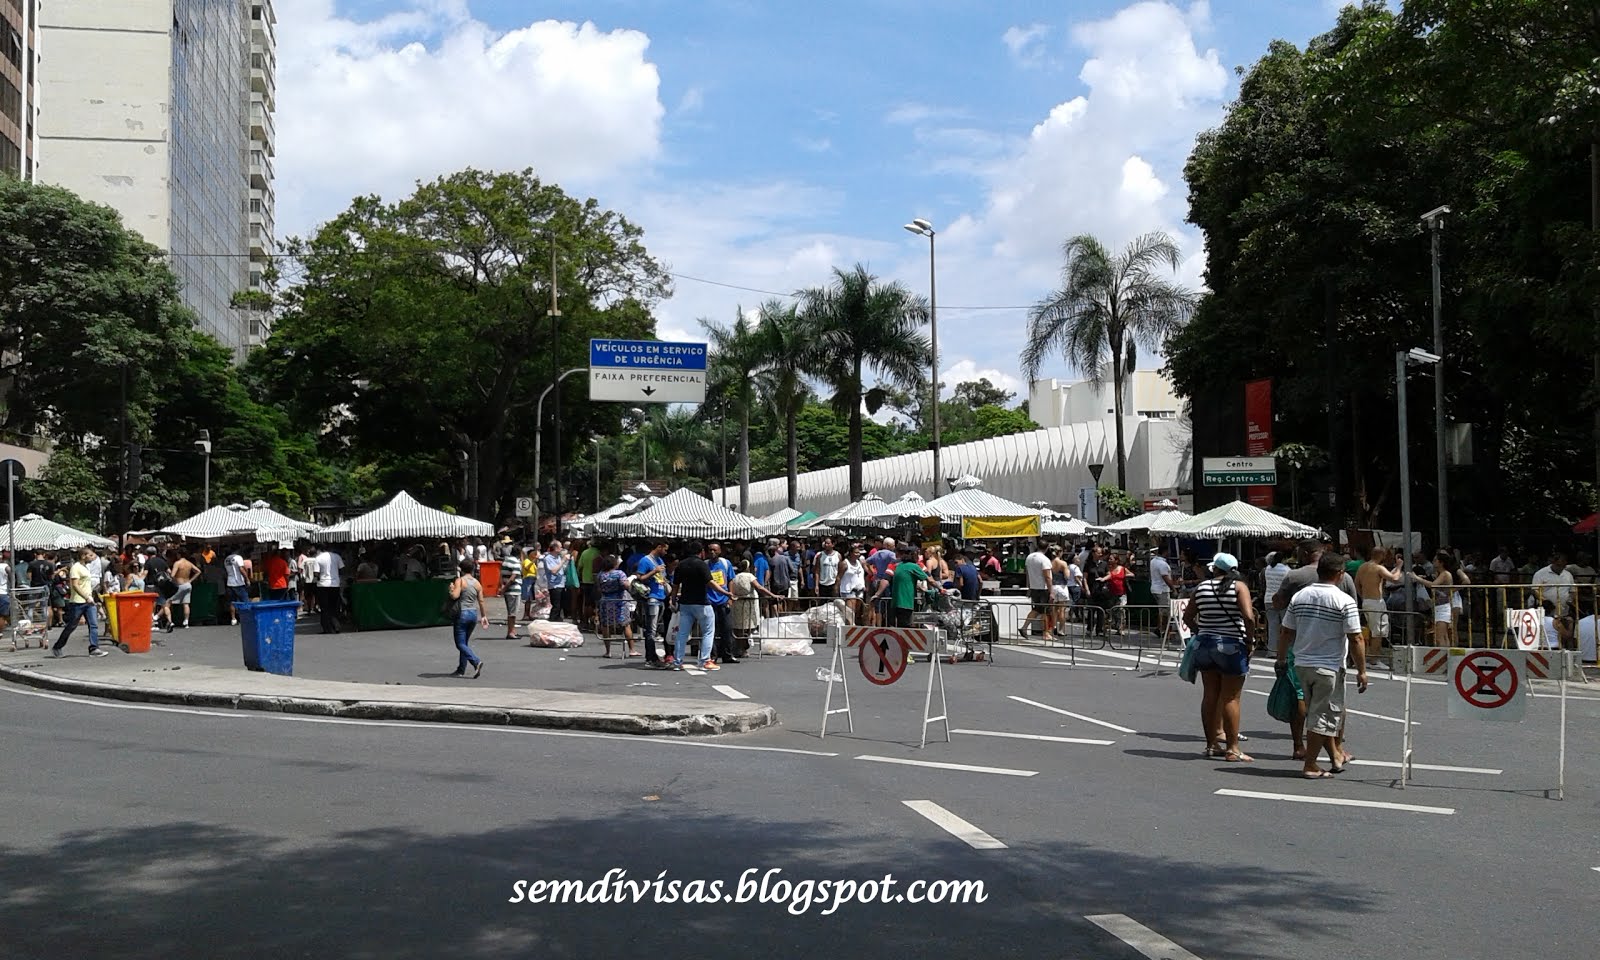 Pontos turísticos de Belo Horizonte Melhores Destinos